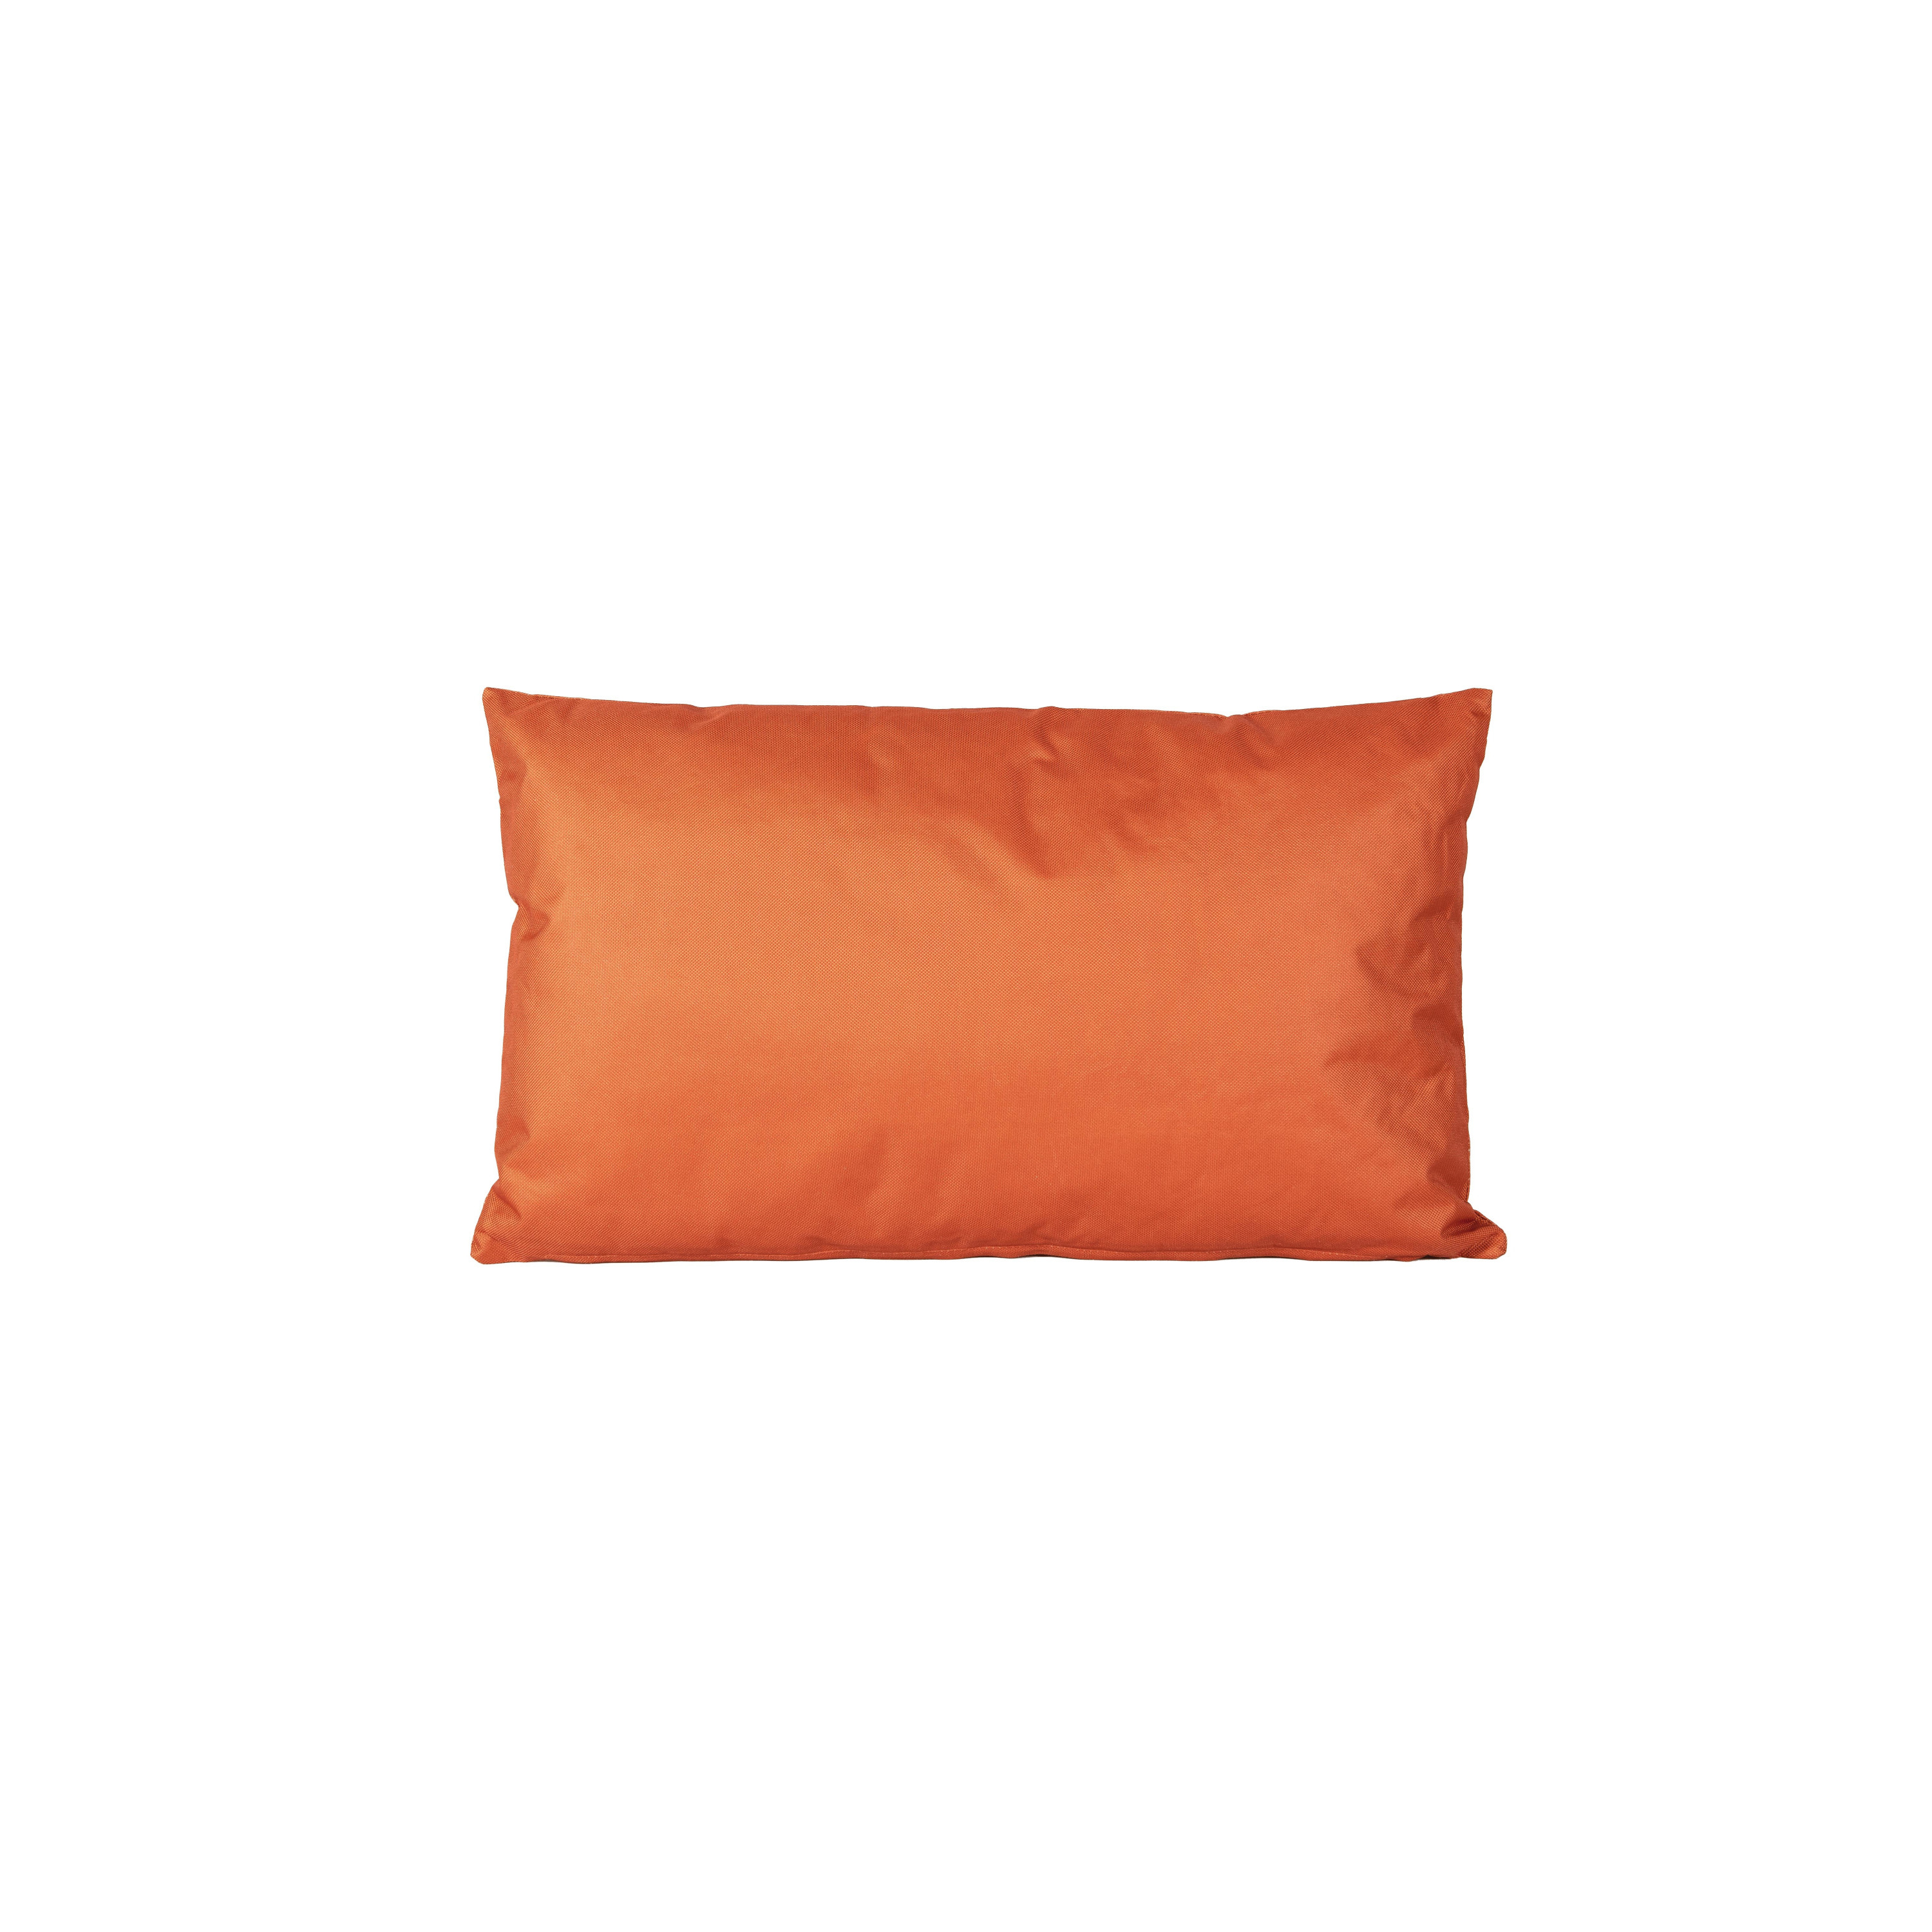 1x Bank-sier kussens voor binnen en buiten in de kleur oranje 30 x 50 cm